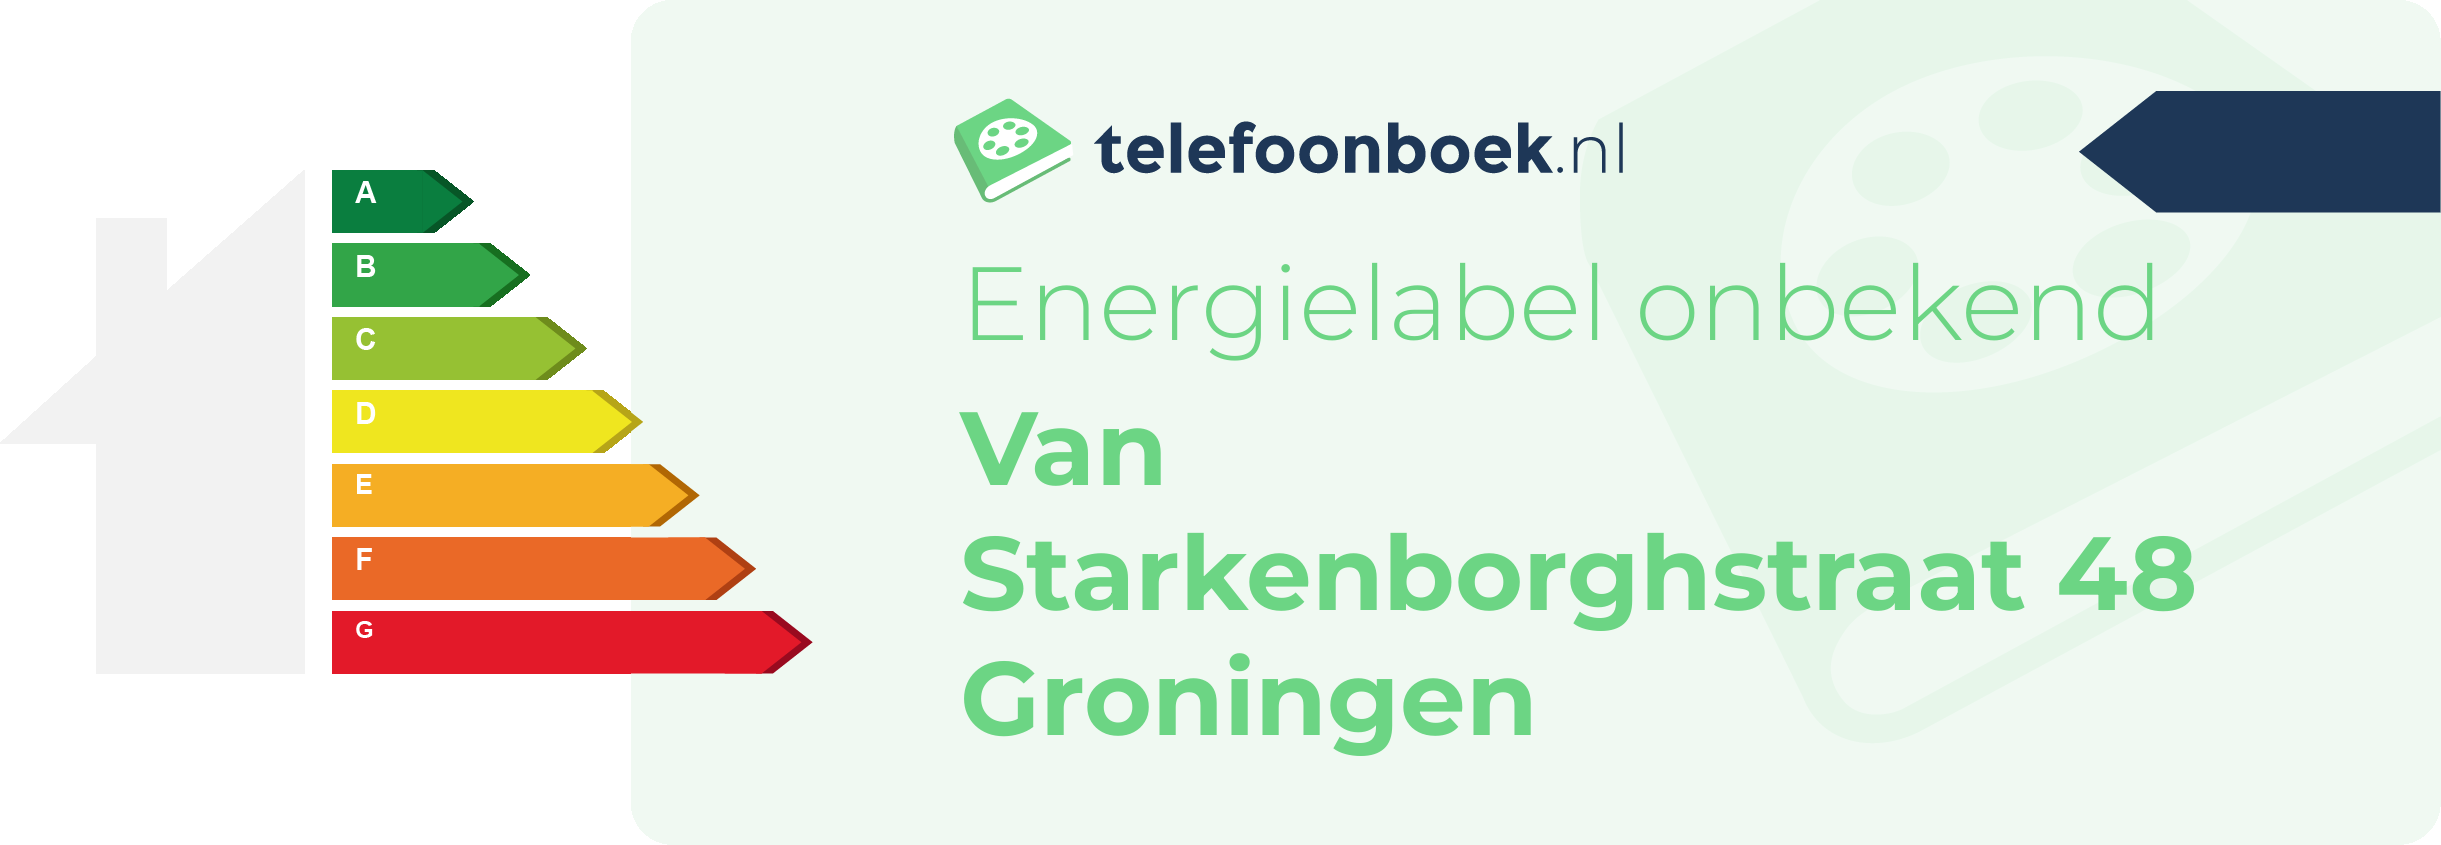 Energielabel Van Starkenborghstraat 48 Groningen